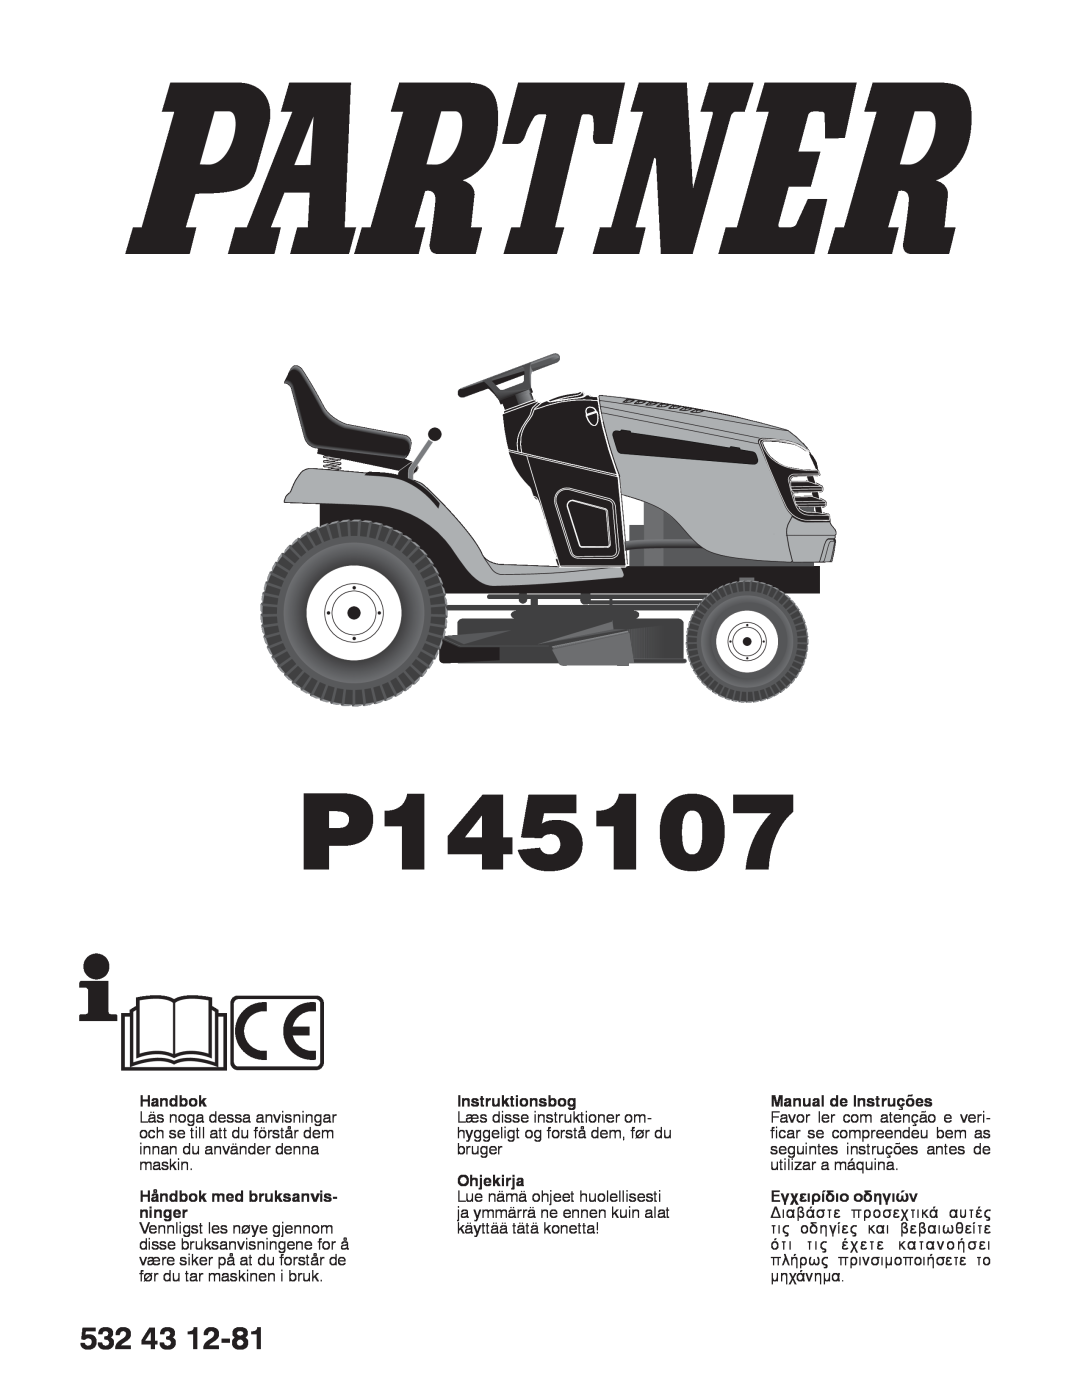 Partner Tech P145107 manual 532 43, Handbok, Håndbok med bruksanvis- ninger, Instruktionsbog, Ohjekirja 